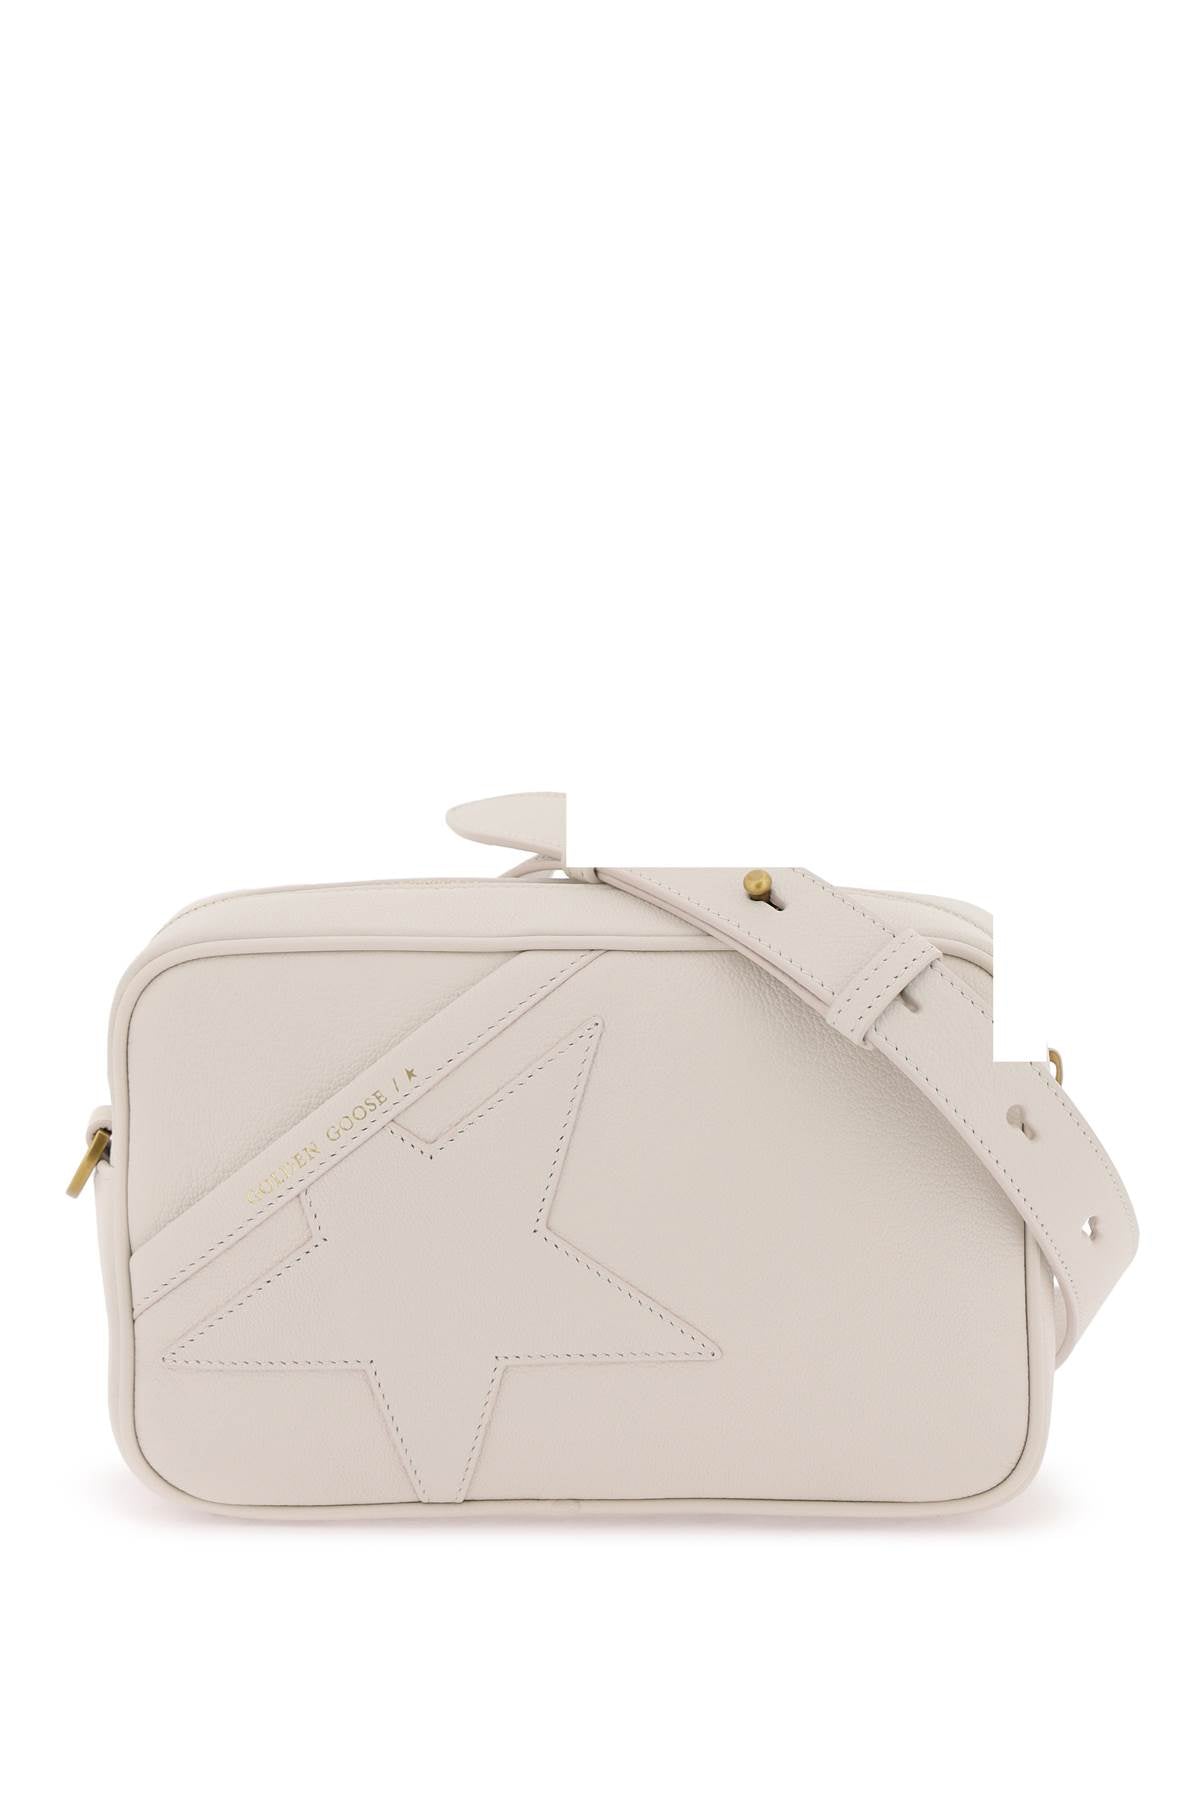 Golden Goose White Leather Star Crossbody Handbag For Women